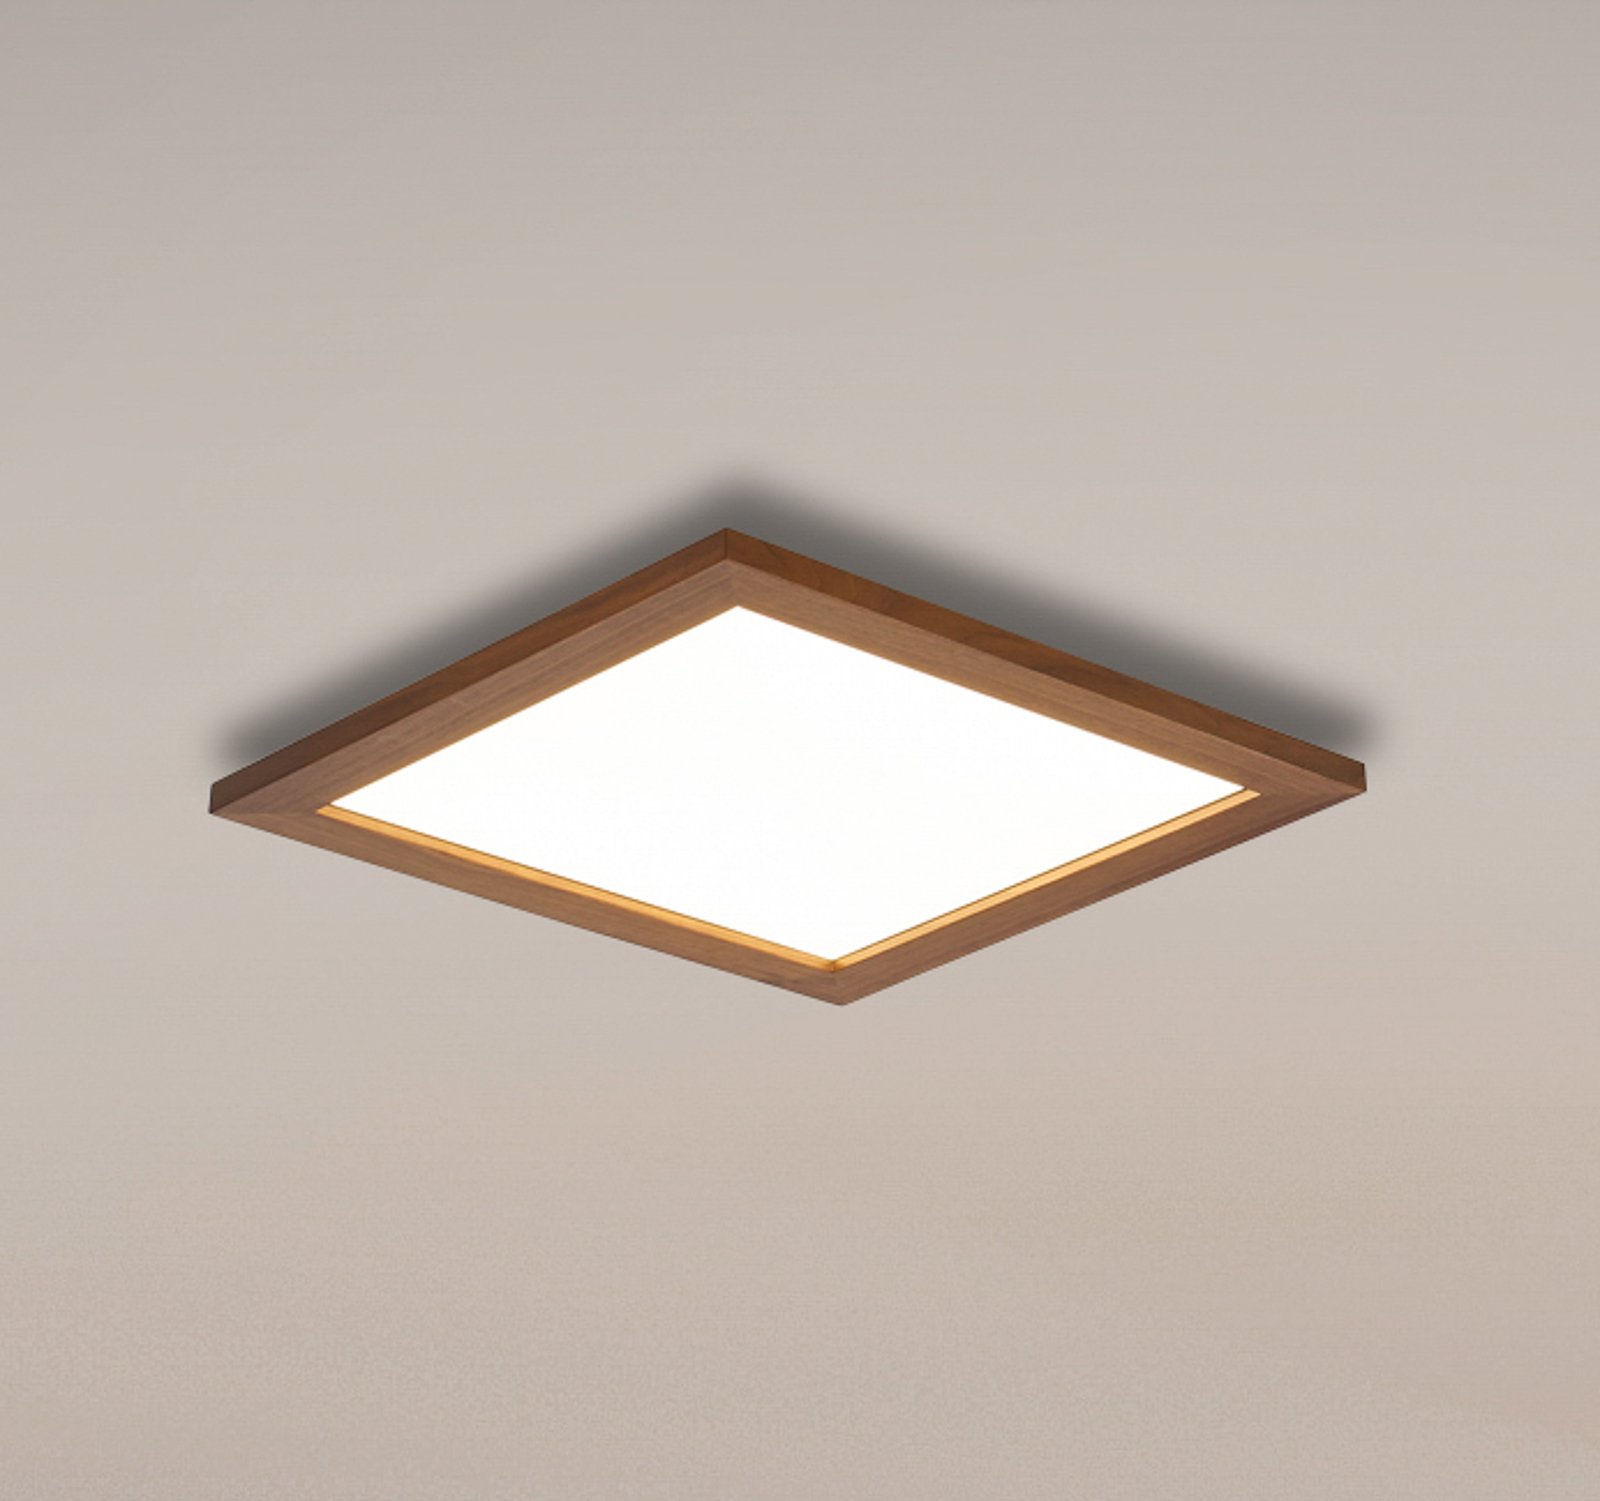 Painel LED Quitani Aurinor, nogueira, 45 cm